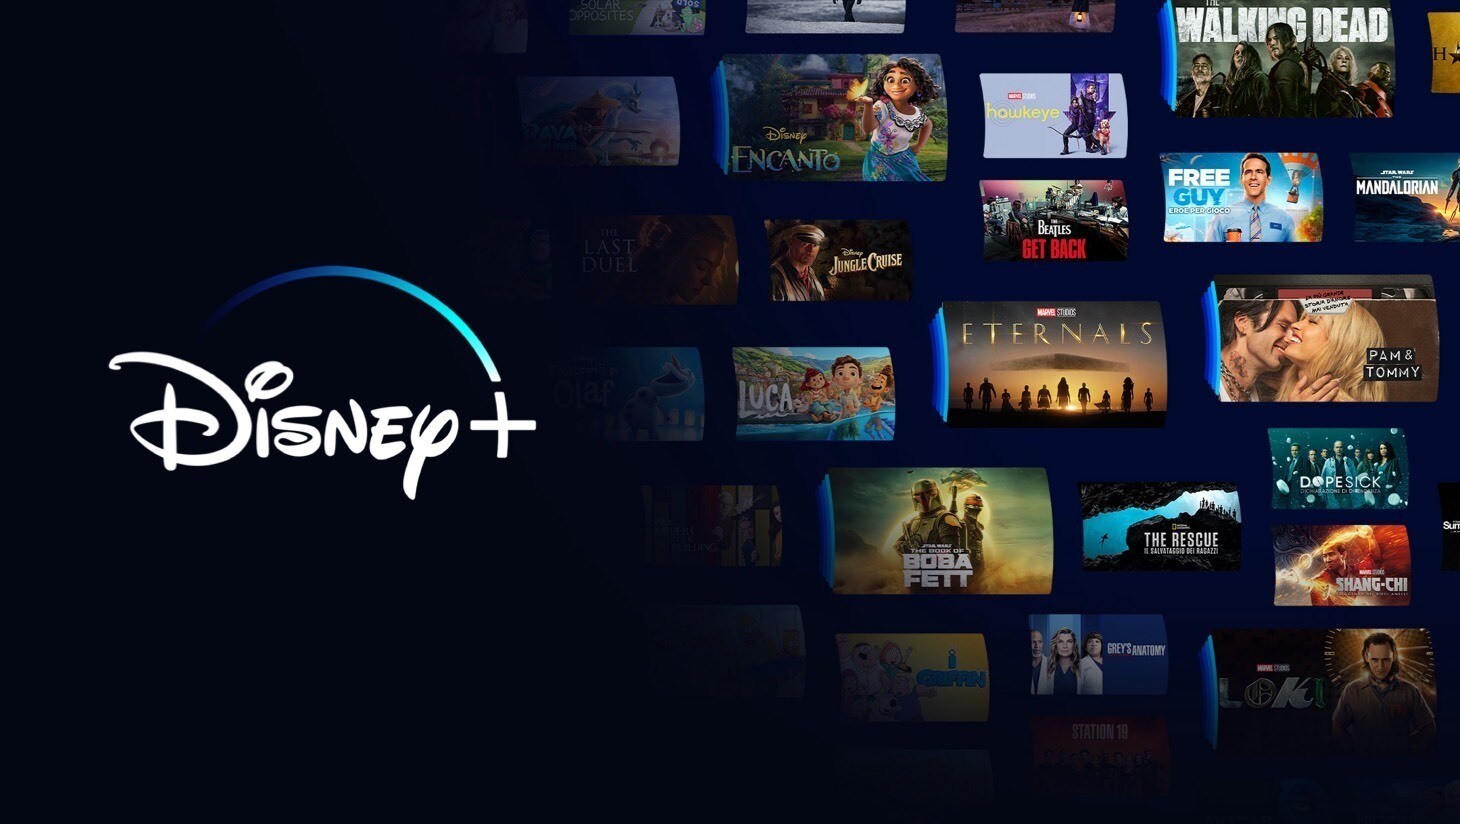 Disney+: disponibili in Italia i nuovi piani con e senza pubblicità, a partire da 5,99 euro al mese